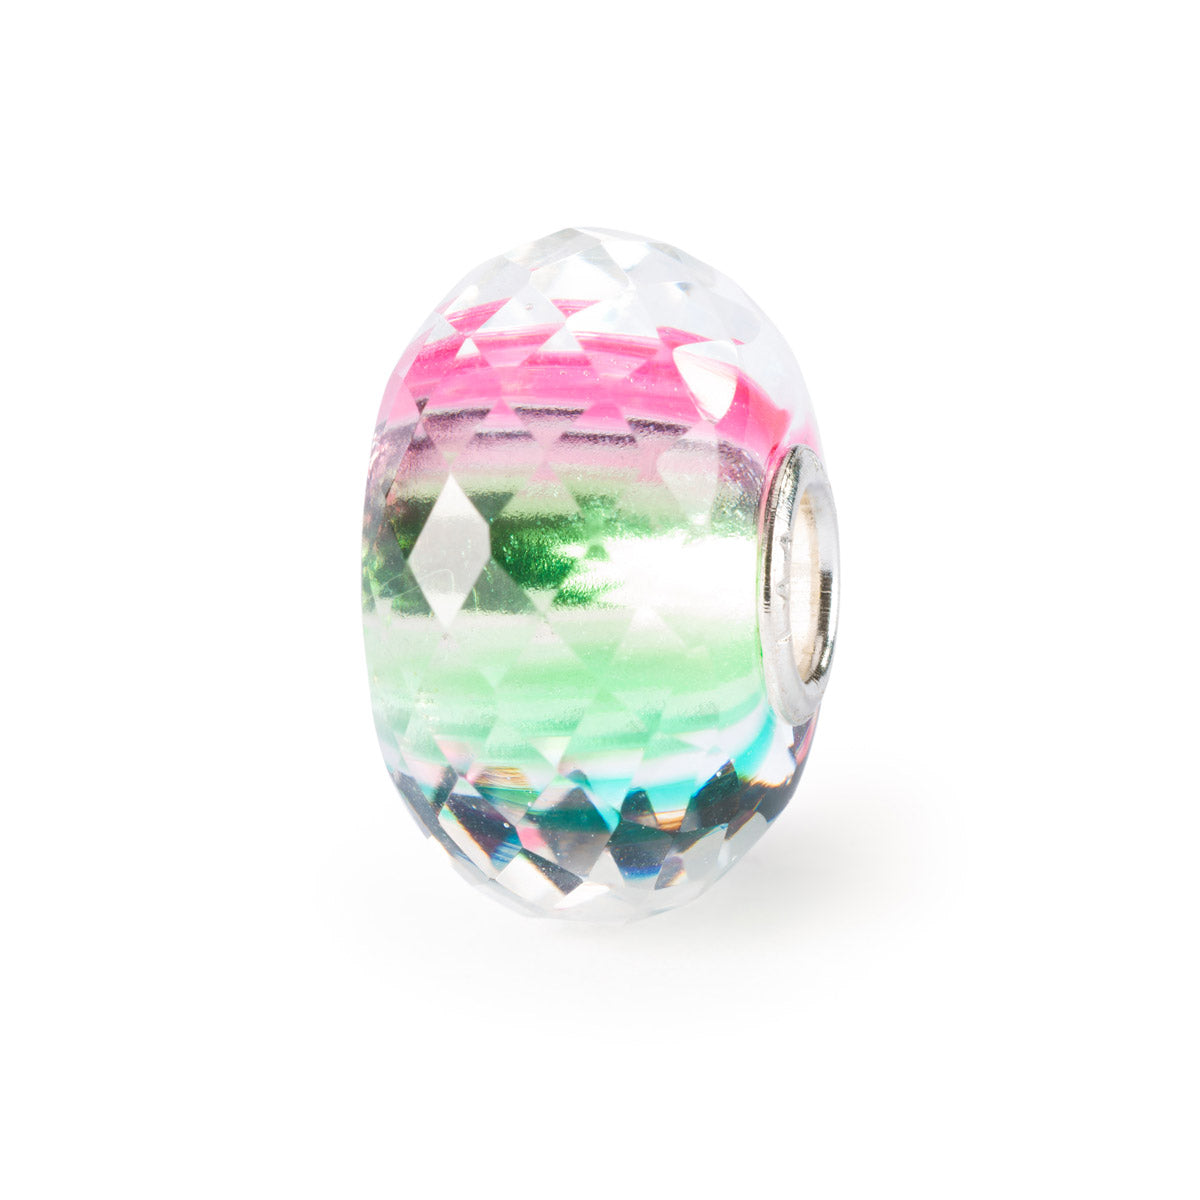 Riflessi di Speranza e Desideri Trollbeads è un beads in vetro sfaccettato, prevalentemente trasparente, con leggere sfumature di rosa, verde e celeste.